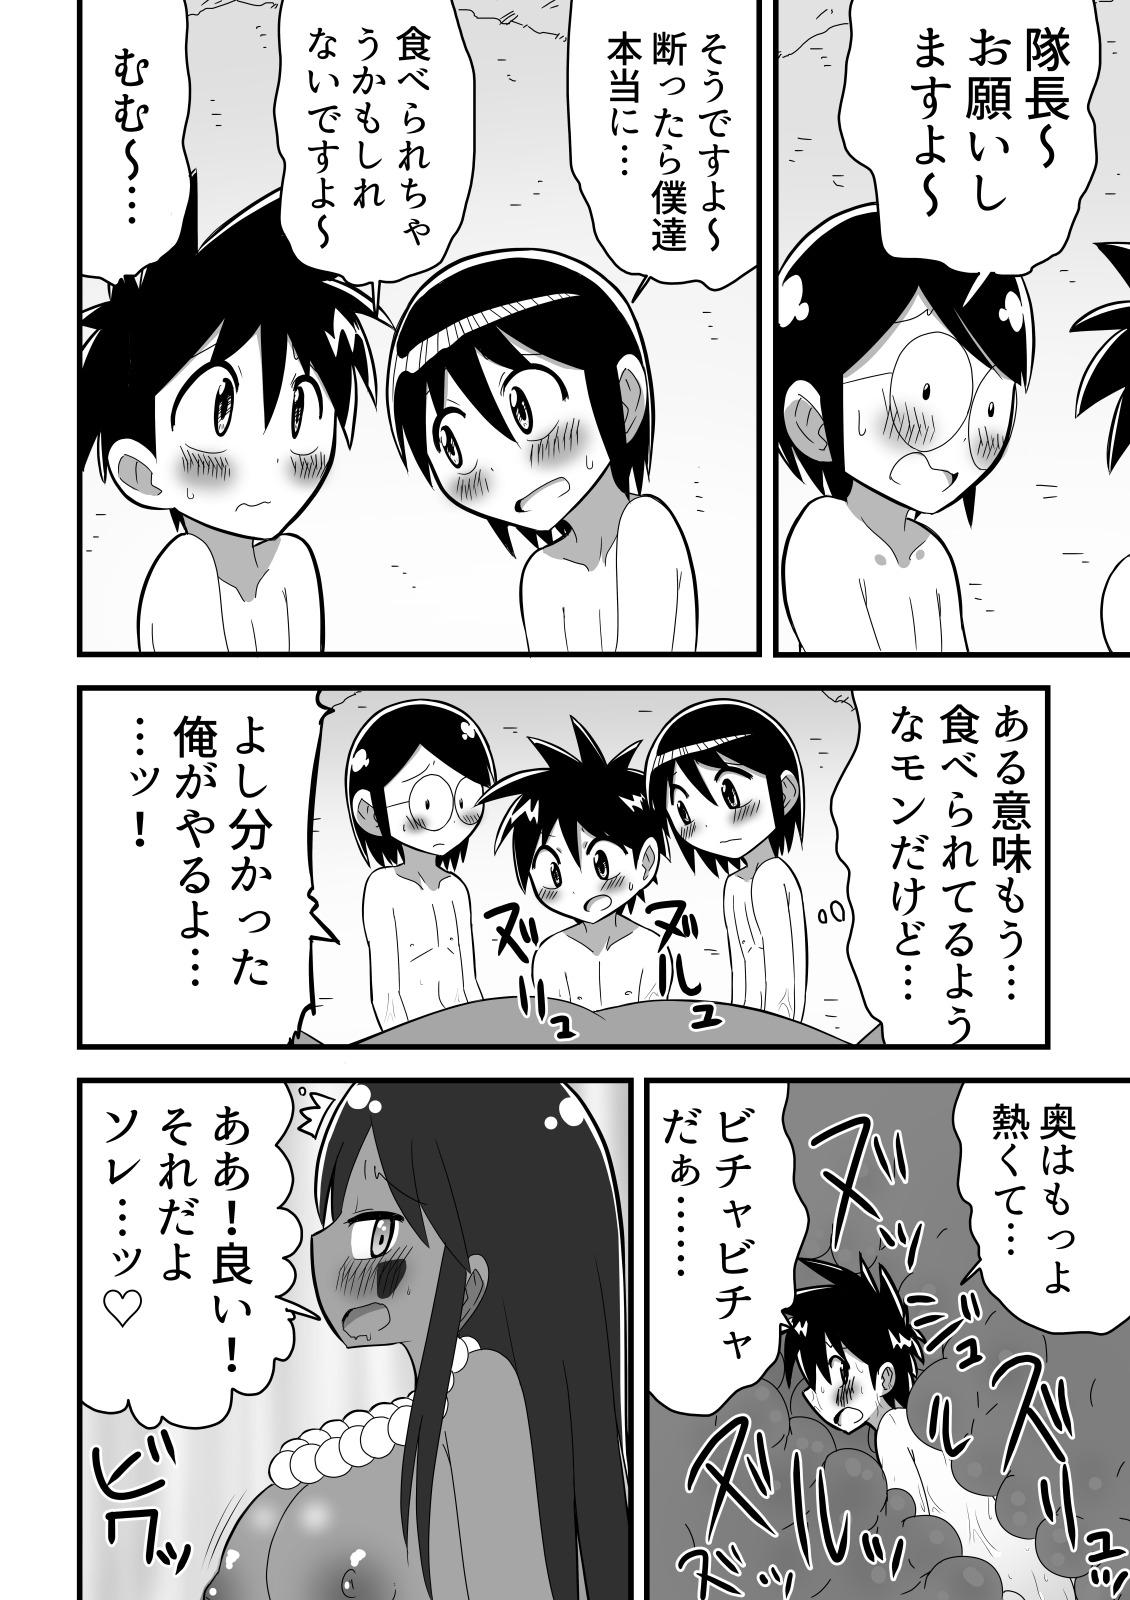 Jingai OneShota Manga Tsumeawase Shuu Vol. 1 19